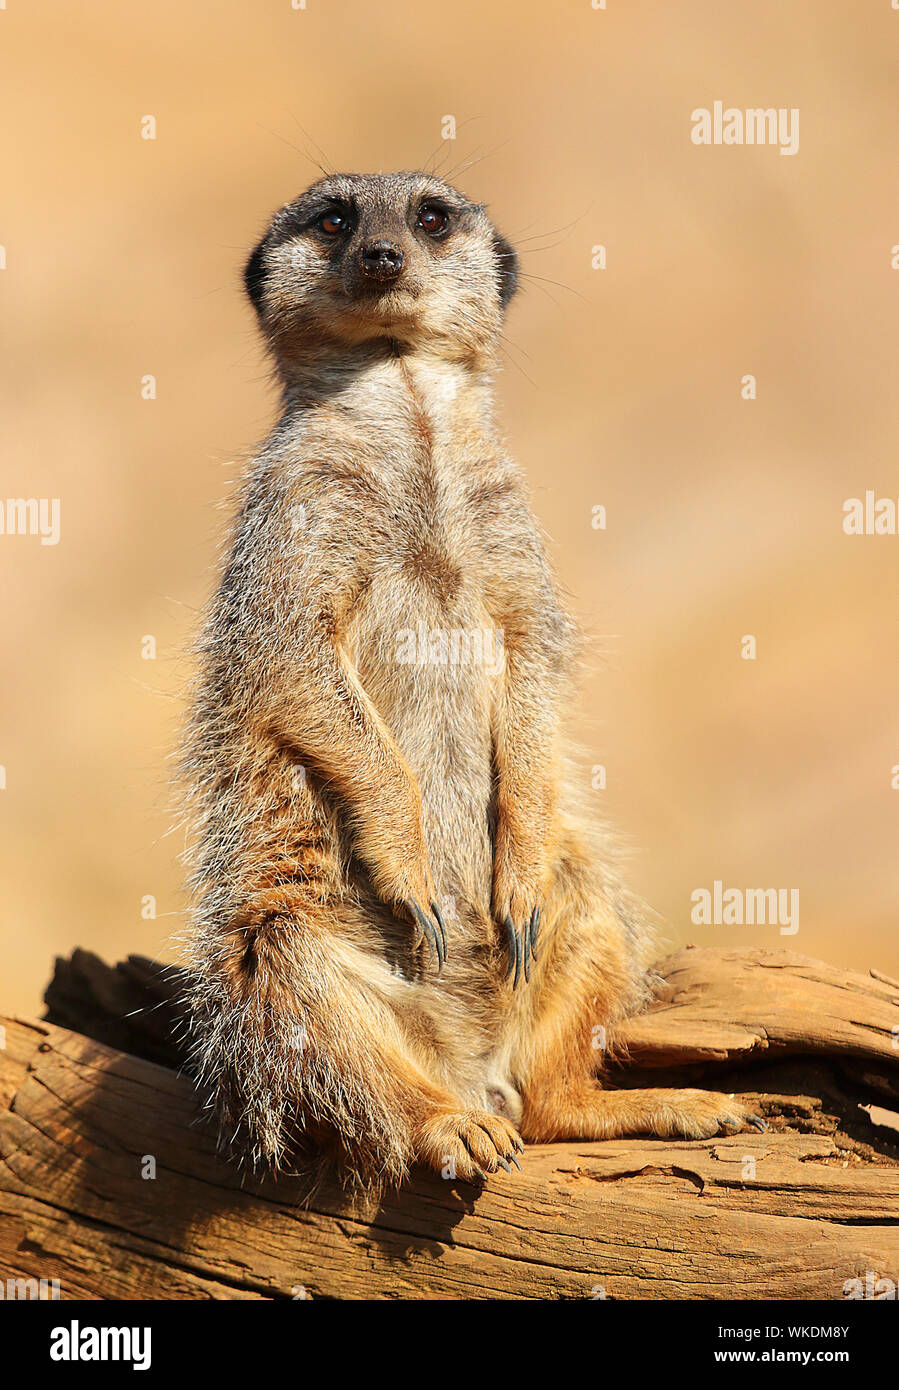 Les suricates (Suricata suricatta suricate ou) - super mignon, mammifères grégaires, trouvés dans le désert de l'Afrique dans les grandes prairies et les groupes sociaux. Banque D'Images